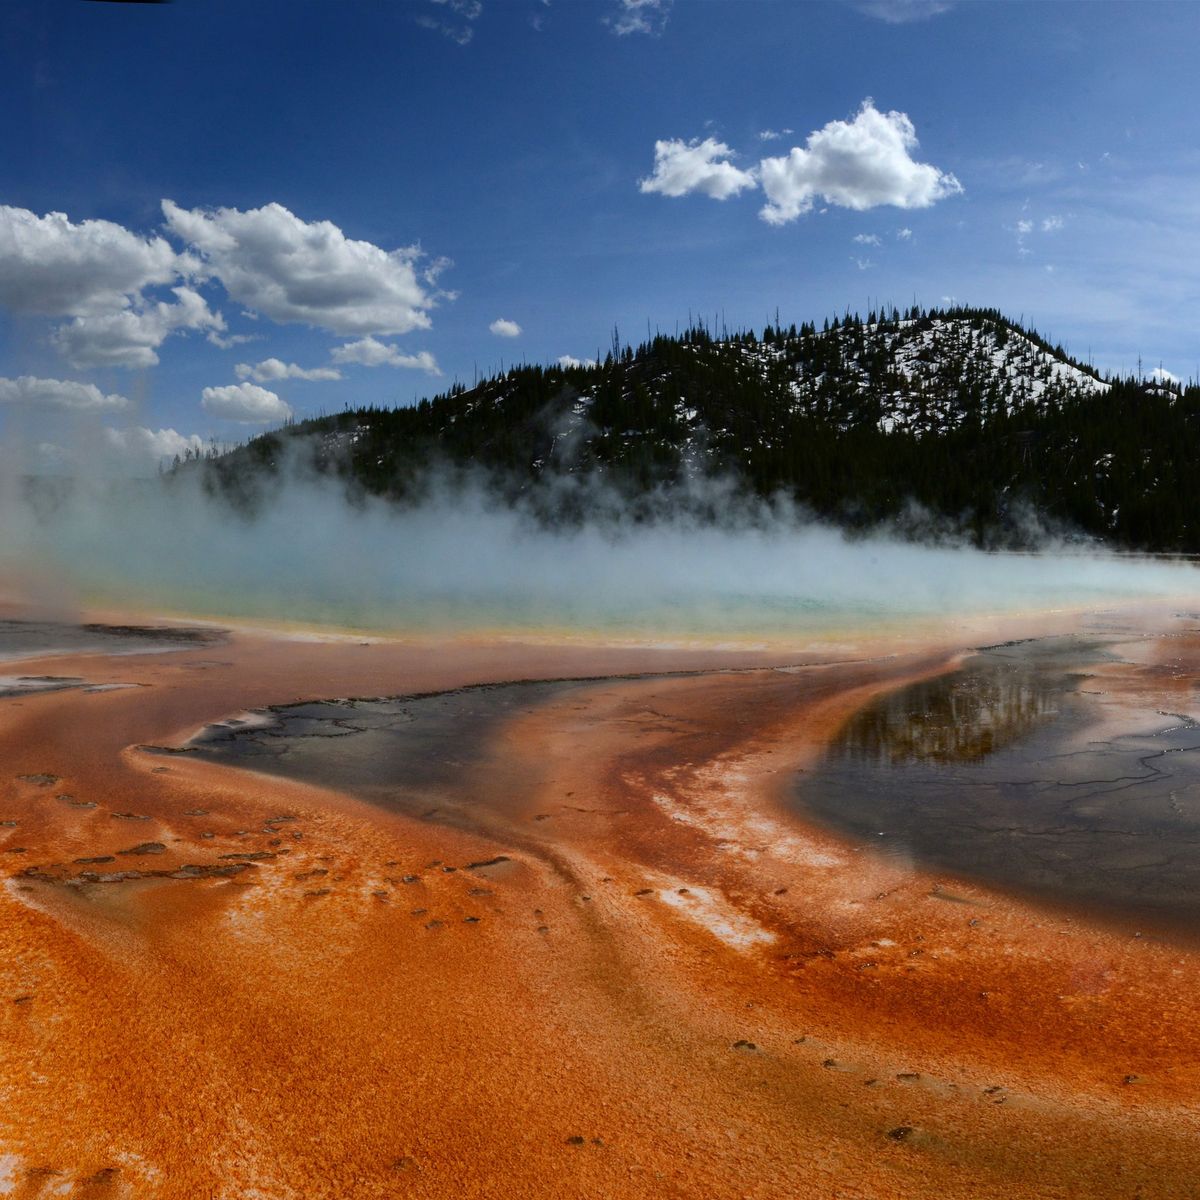 Slijmerige oranje matten van microben gedijen in en rond de Grand Prismatic Spring in het Yellowstone National Park